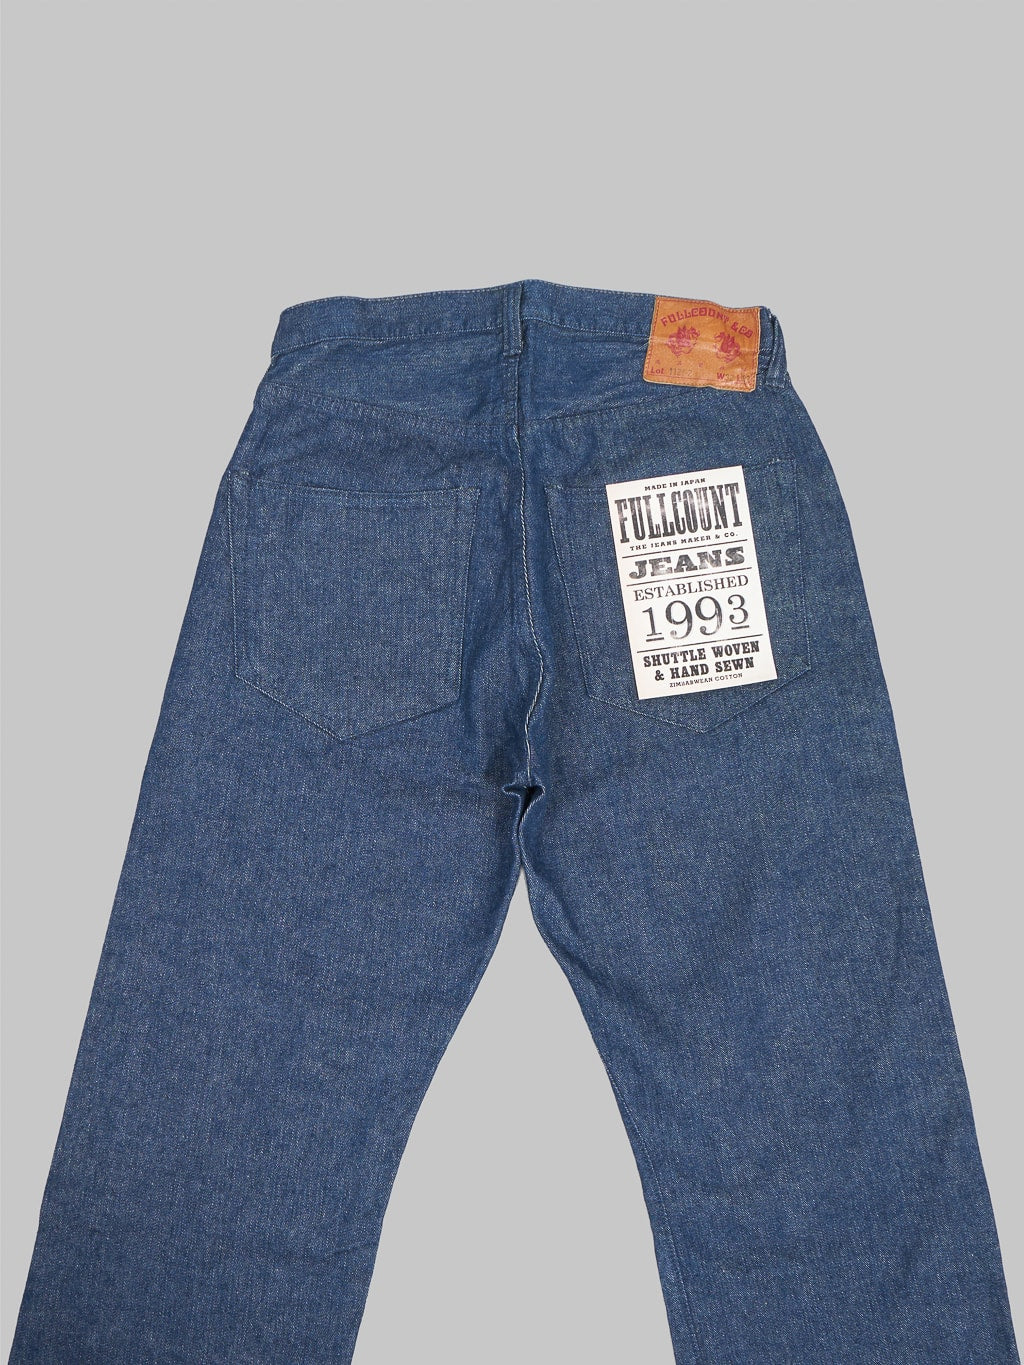 fullcount 1121 duke original selvedge denim super wide jeans back pockets